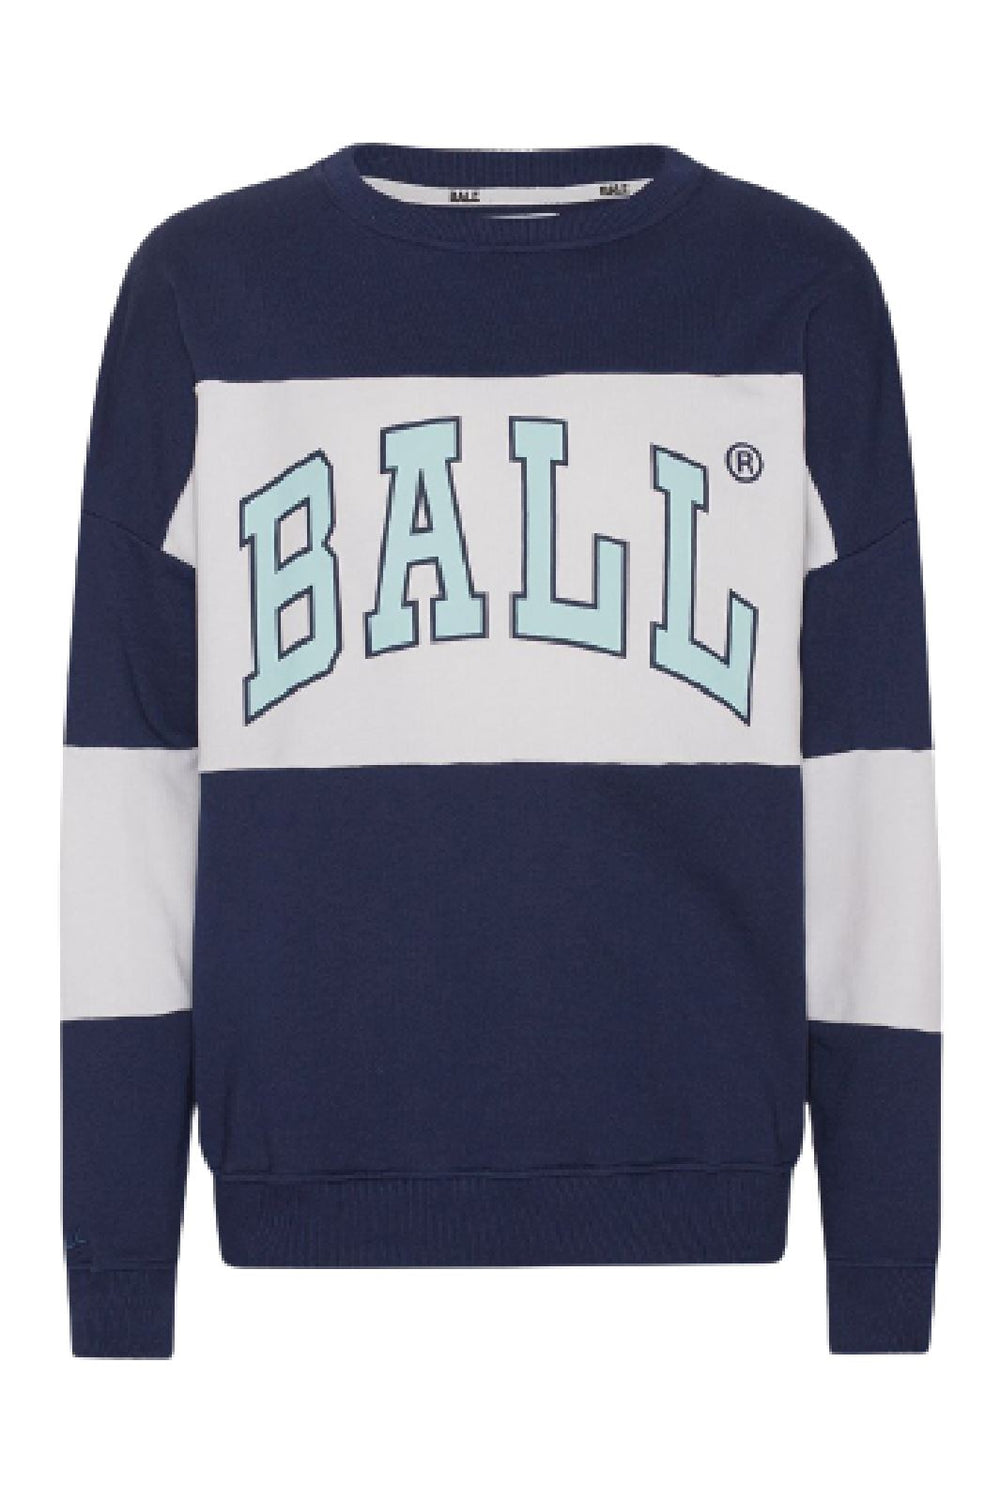 Ball - J. Robinson - Ocean Sweatshirts 